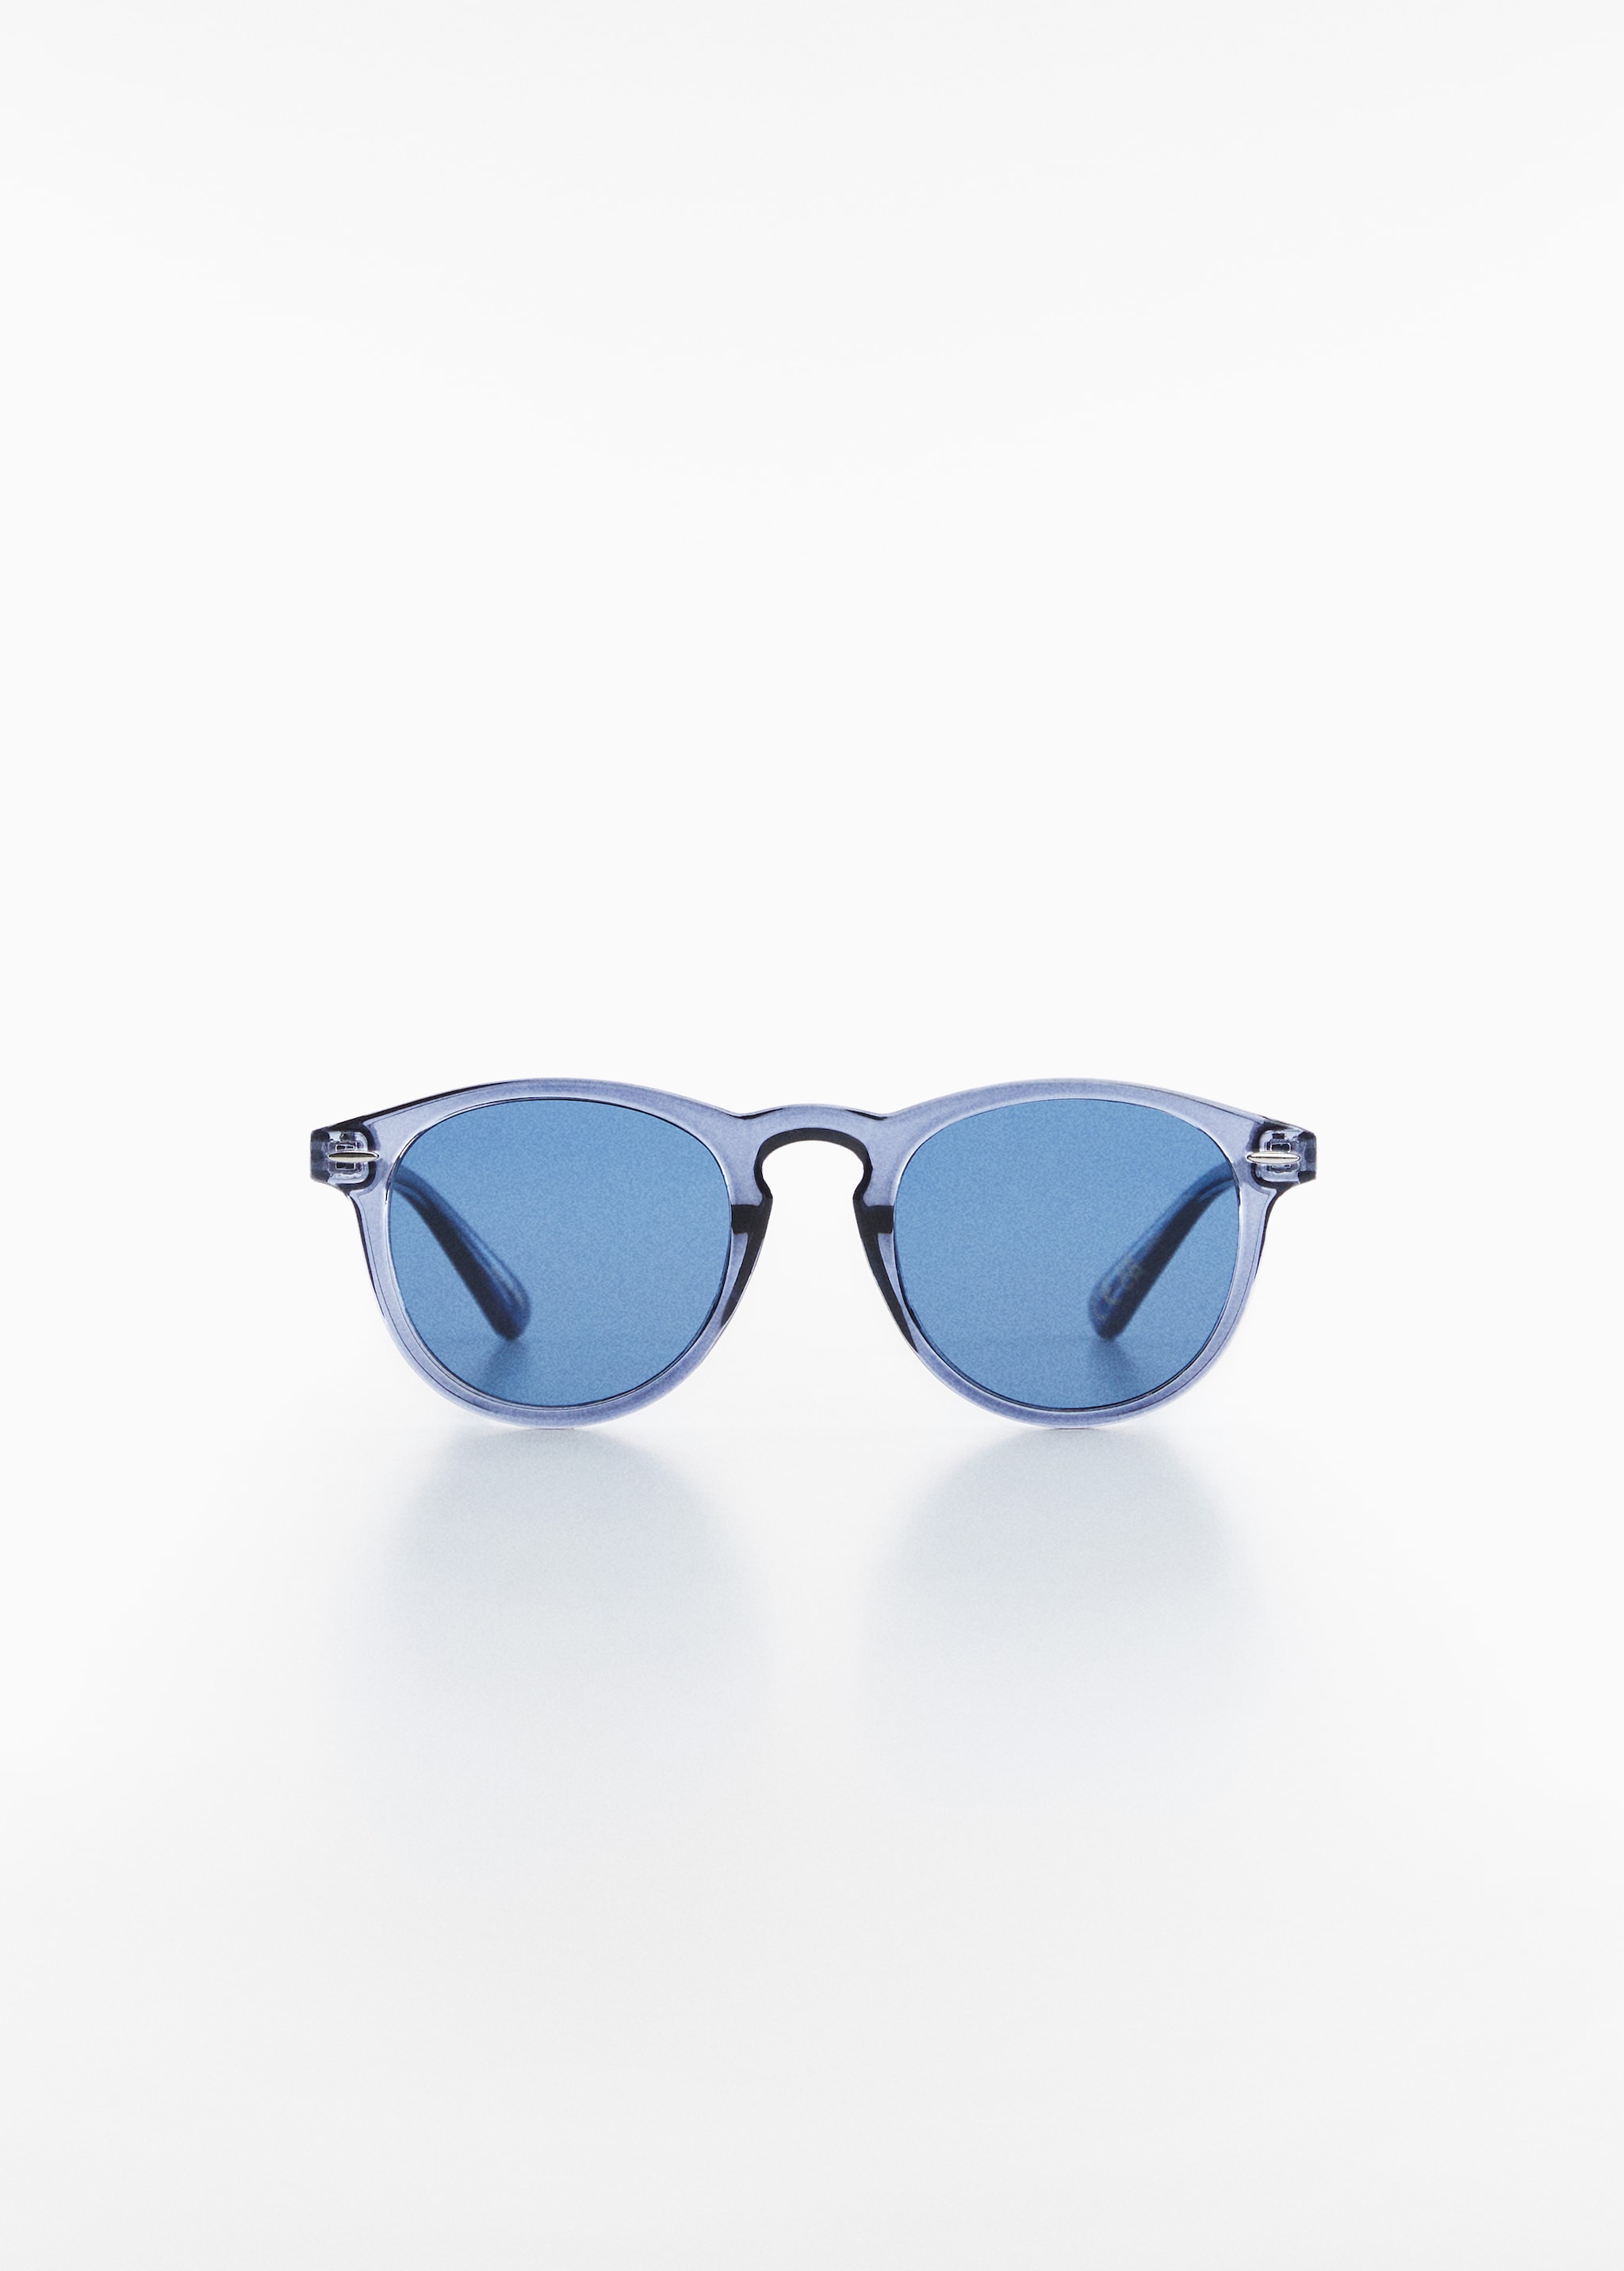 Sonnenbrille mit transparenter Fassung - Artikel ohne Model